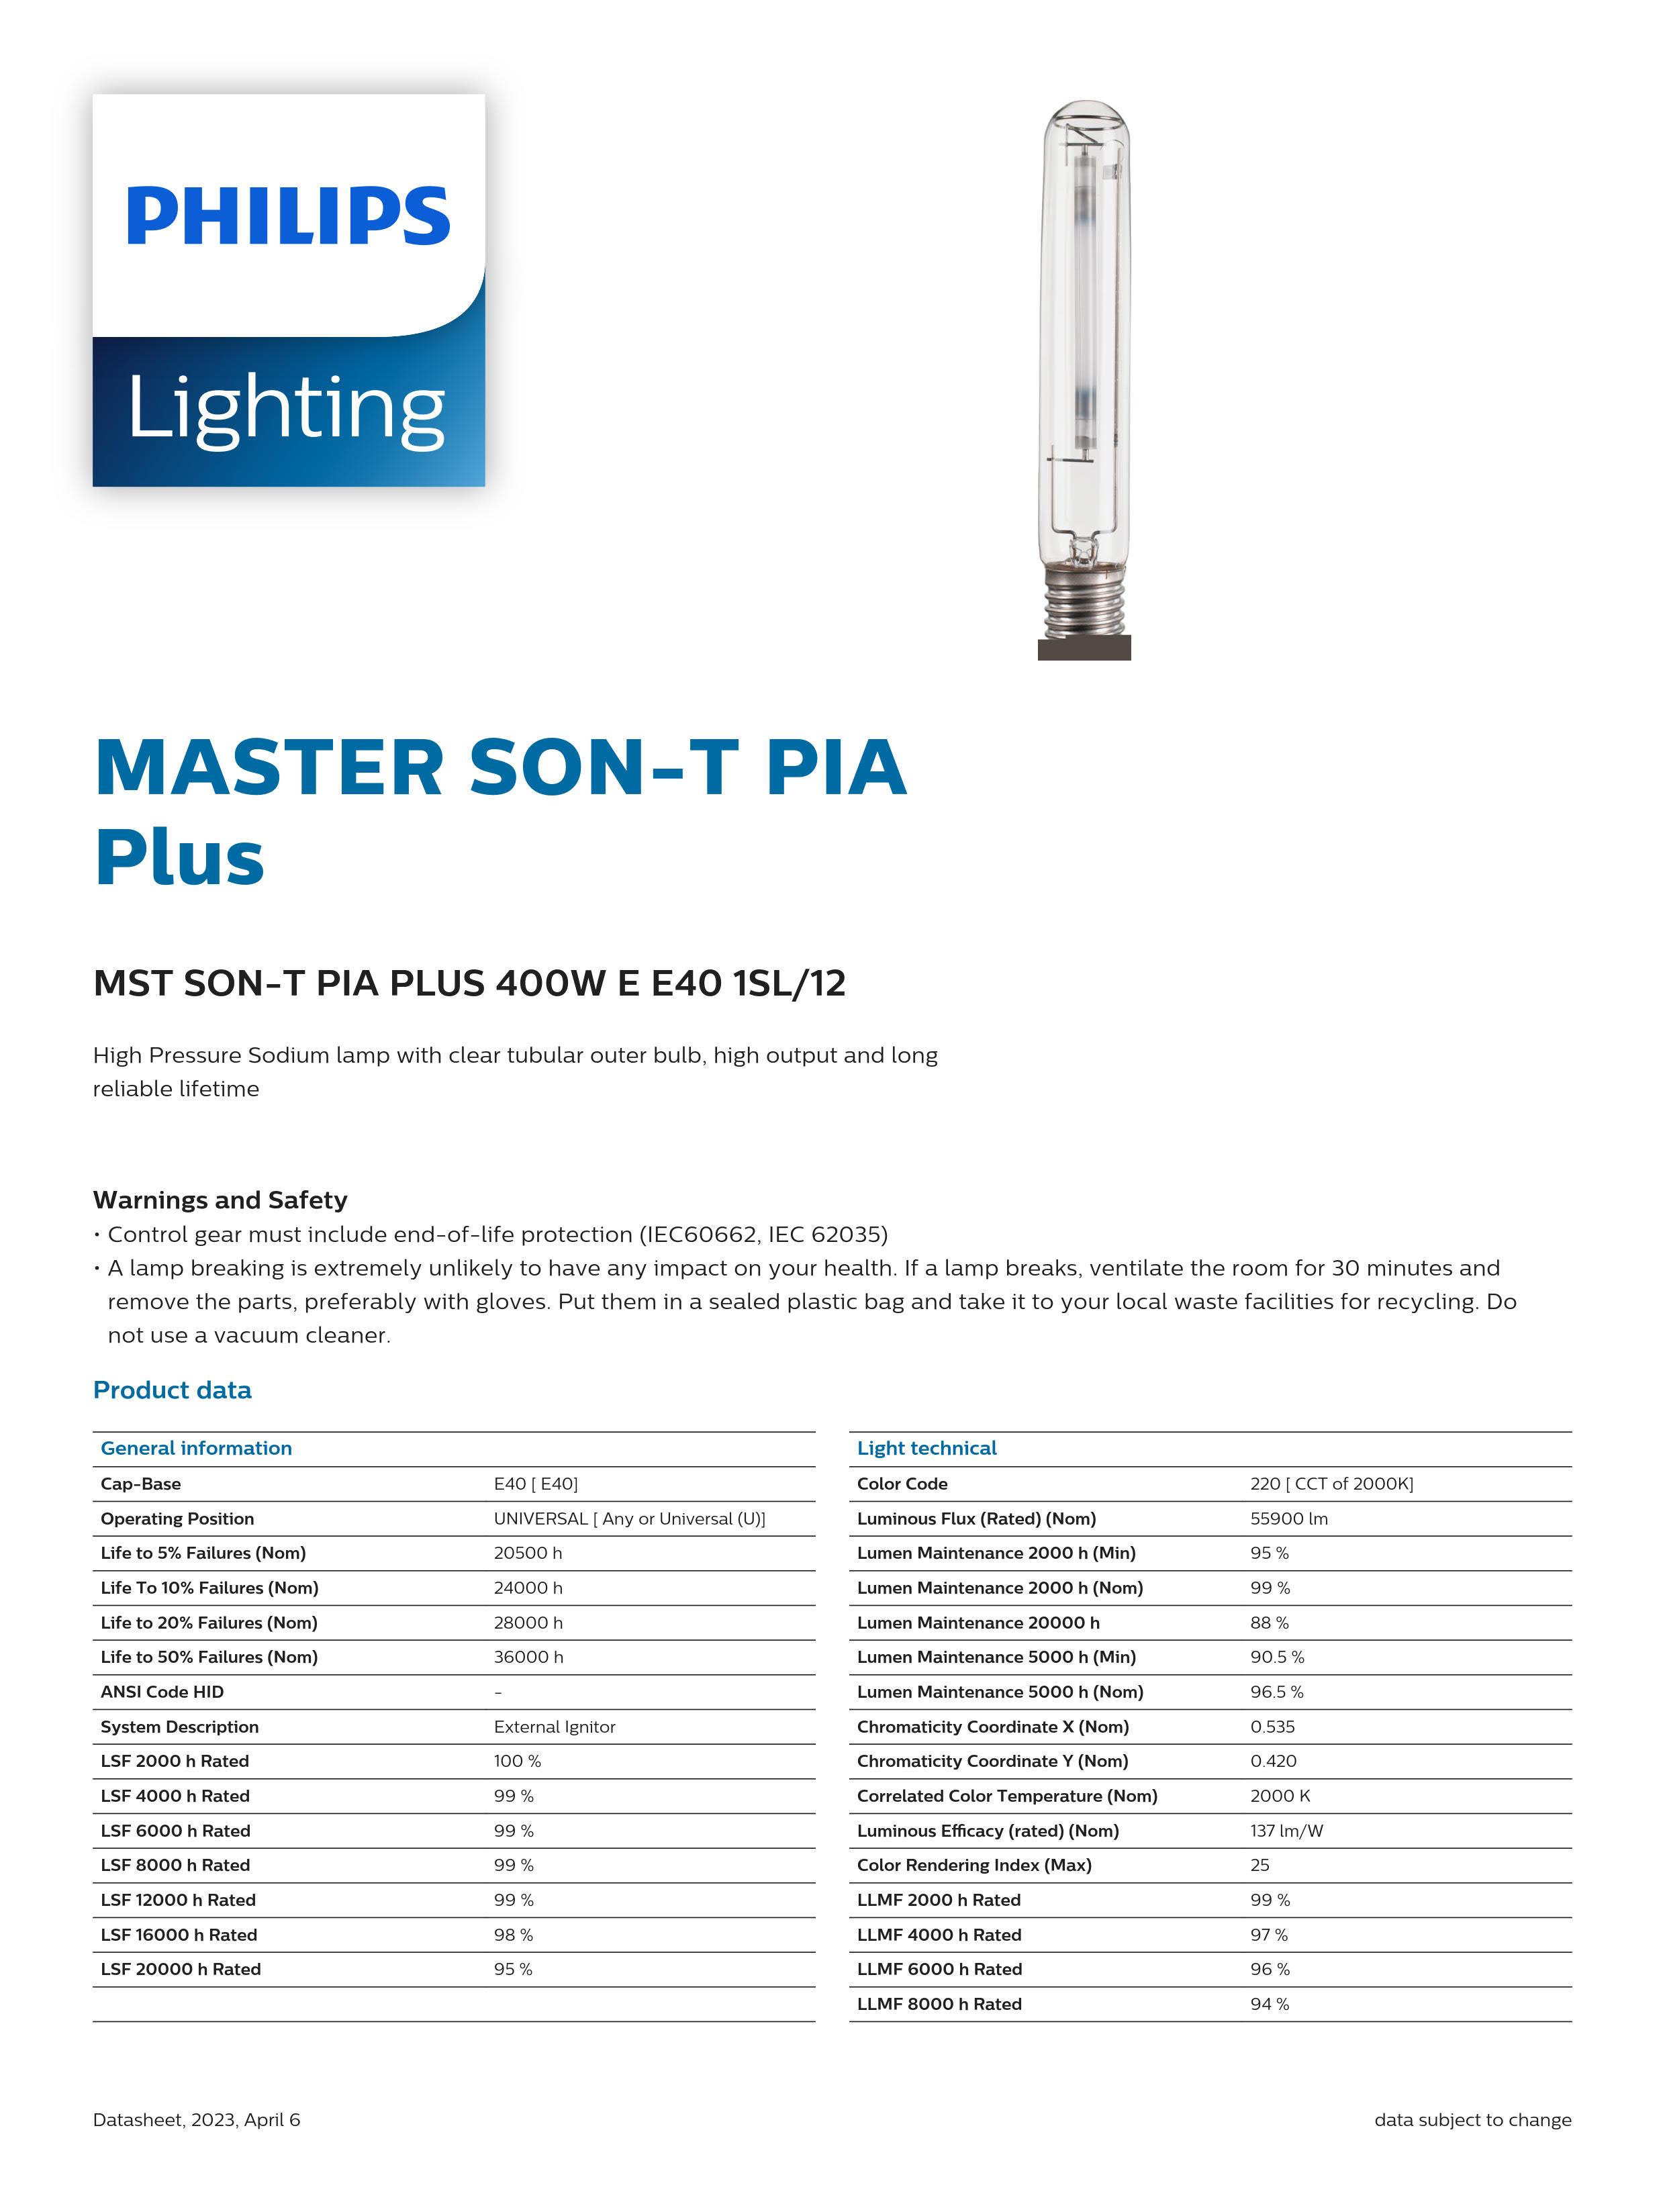 PHILIPS Sodium lamp MASTER SON-T PIA PLUS 400W E E40 1SL/12 928144809298